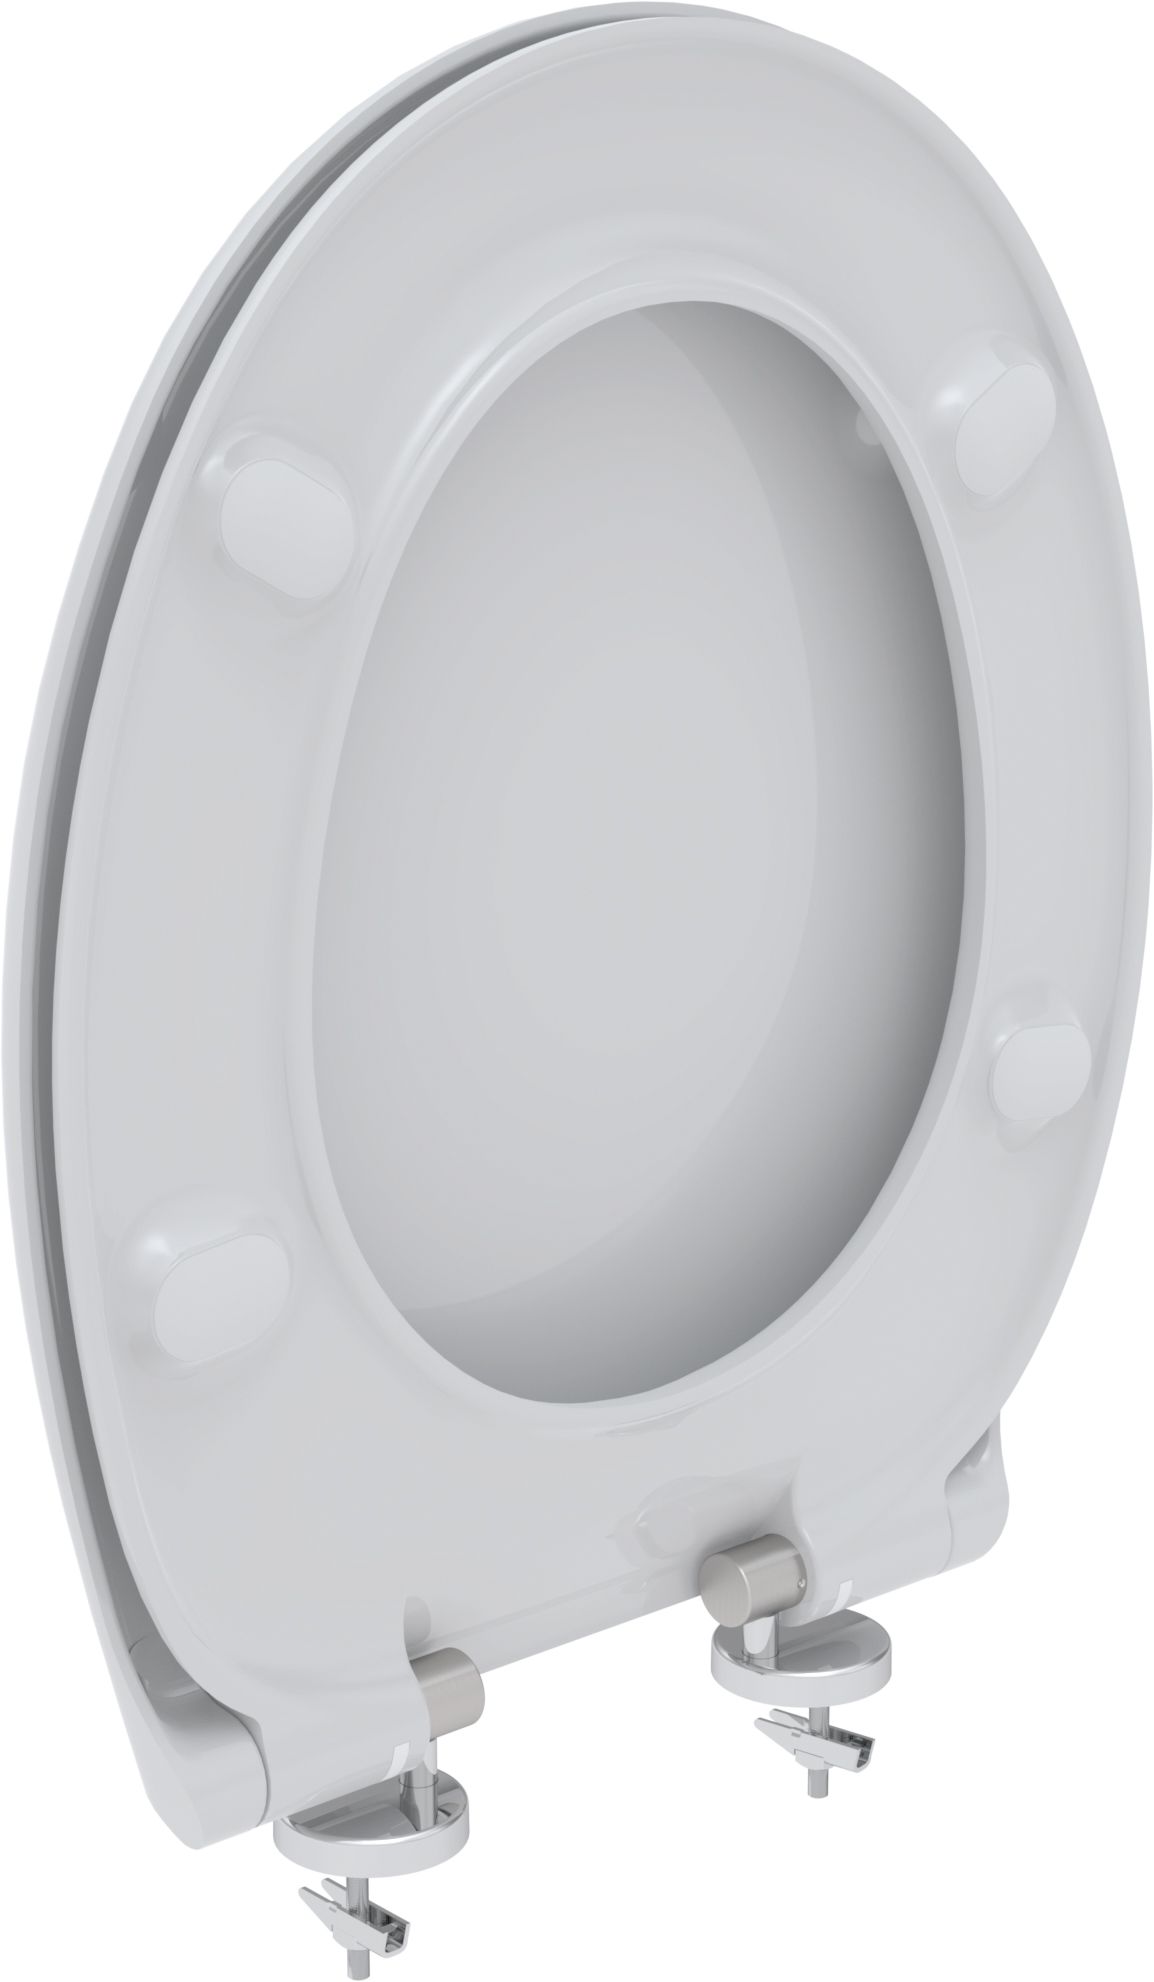 Toilet seat Libra, white, quick release